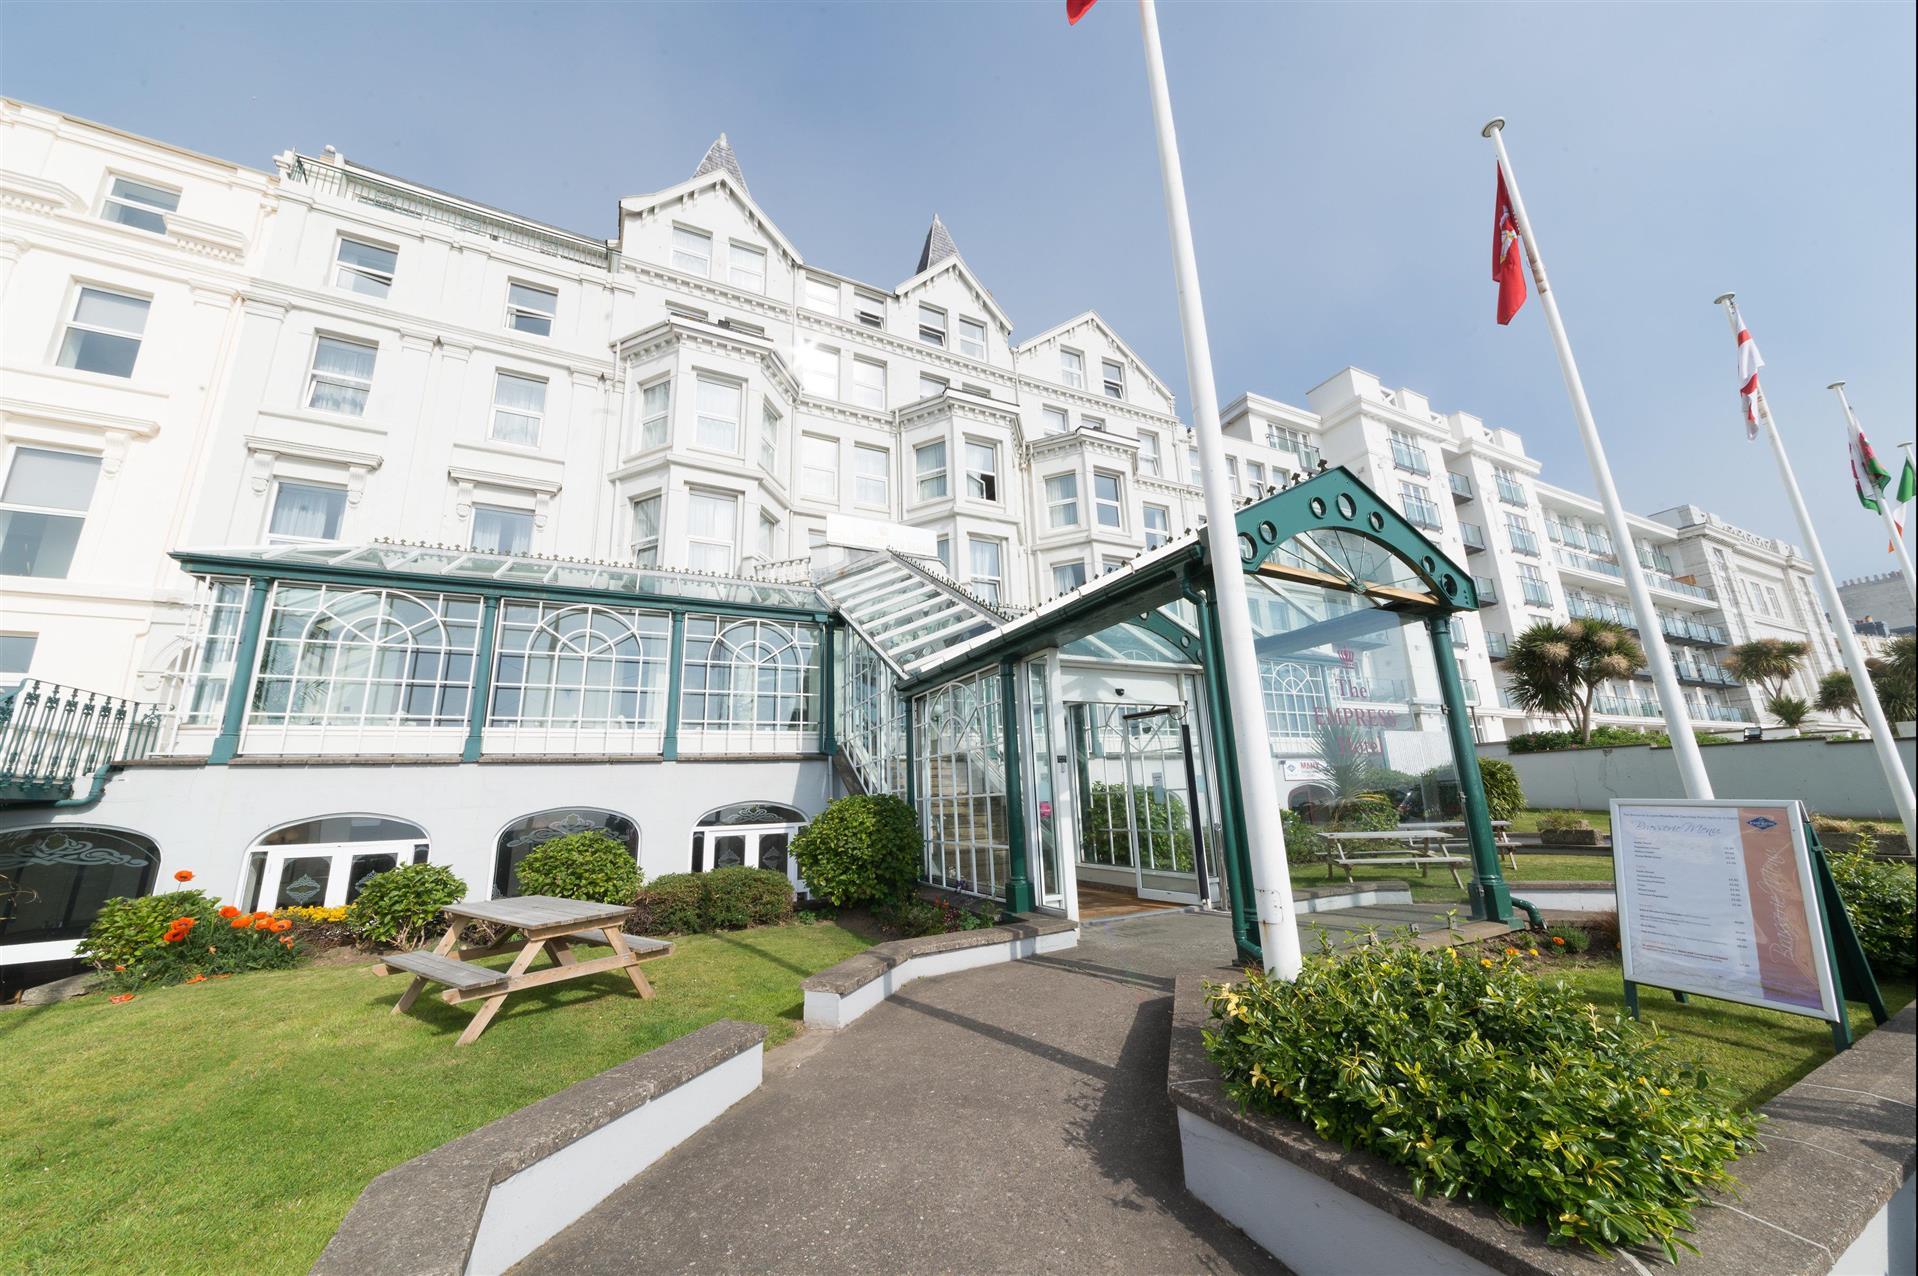 The Empress Hotel in Isle Of Man, GB1